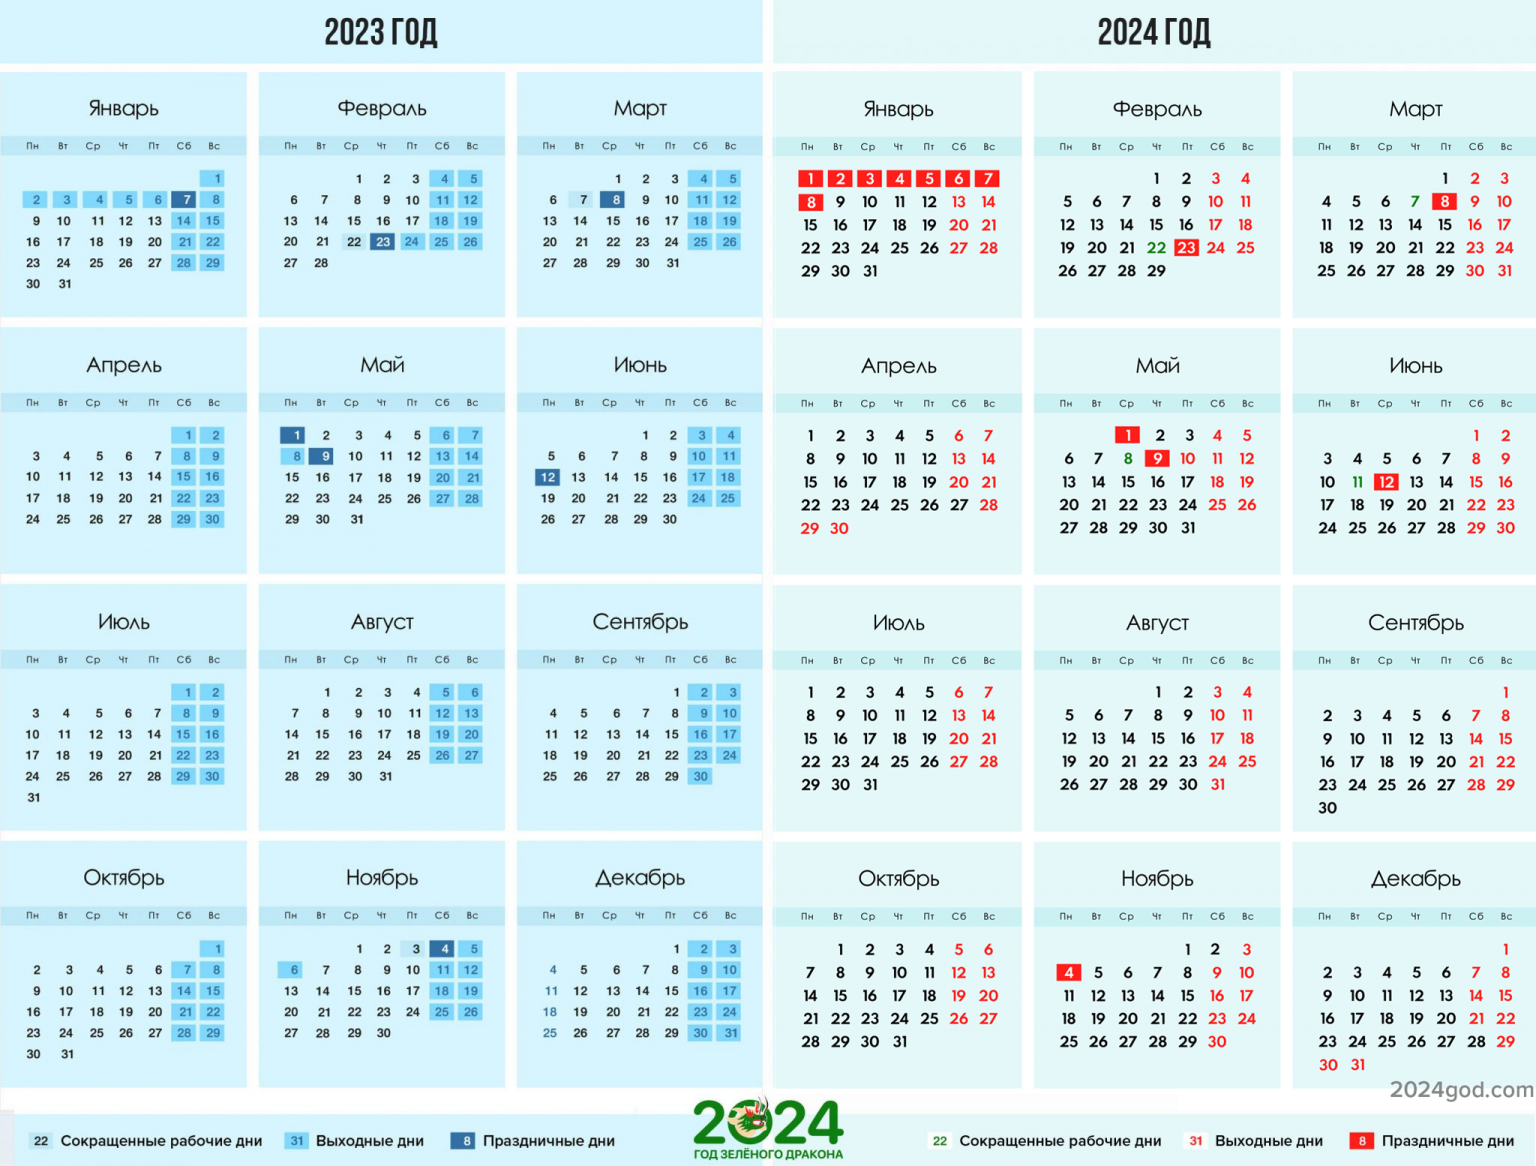 Майские праздники 2024 рб. Календарь на 2024 год. Календарь на 2024 год с праздниками. Календарь выходных на 2024 год. Календарь с праздничными днями на 2024 год.